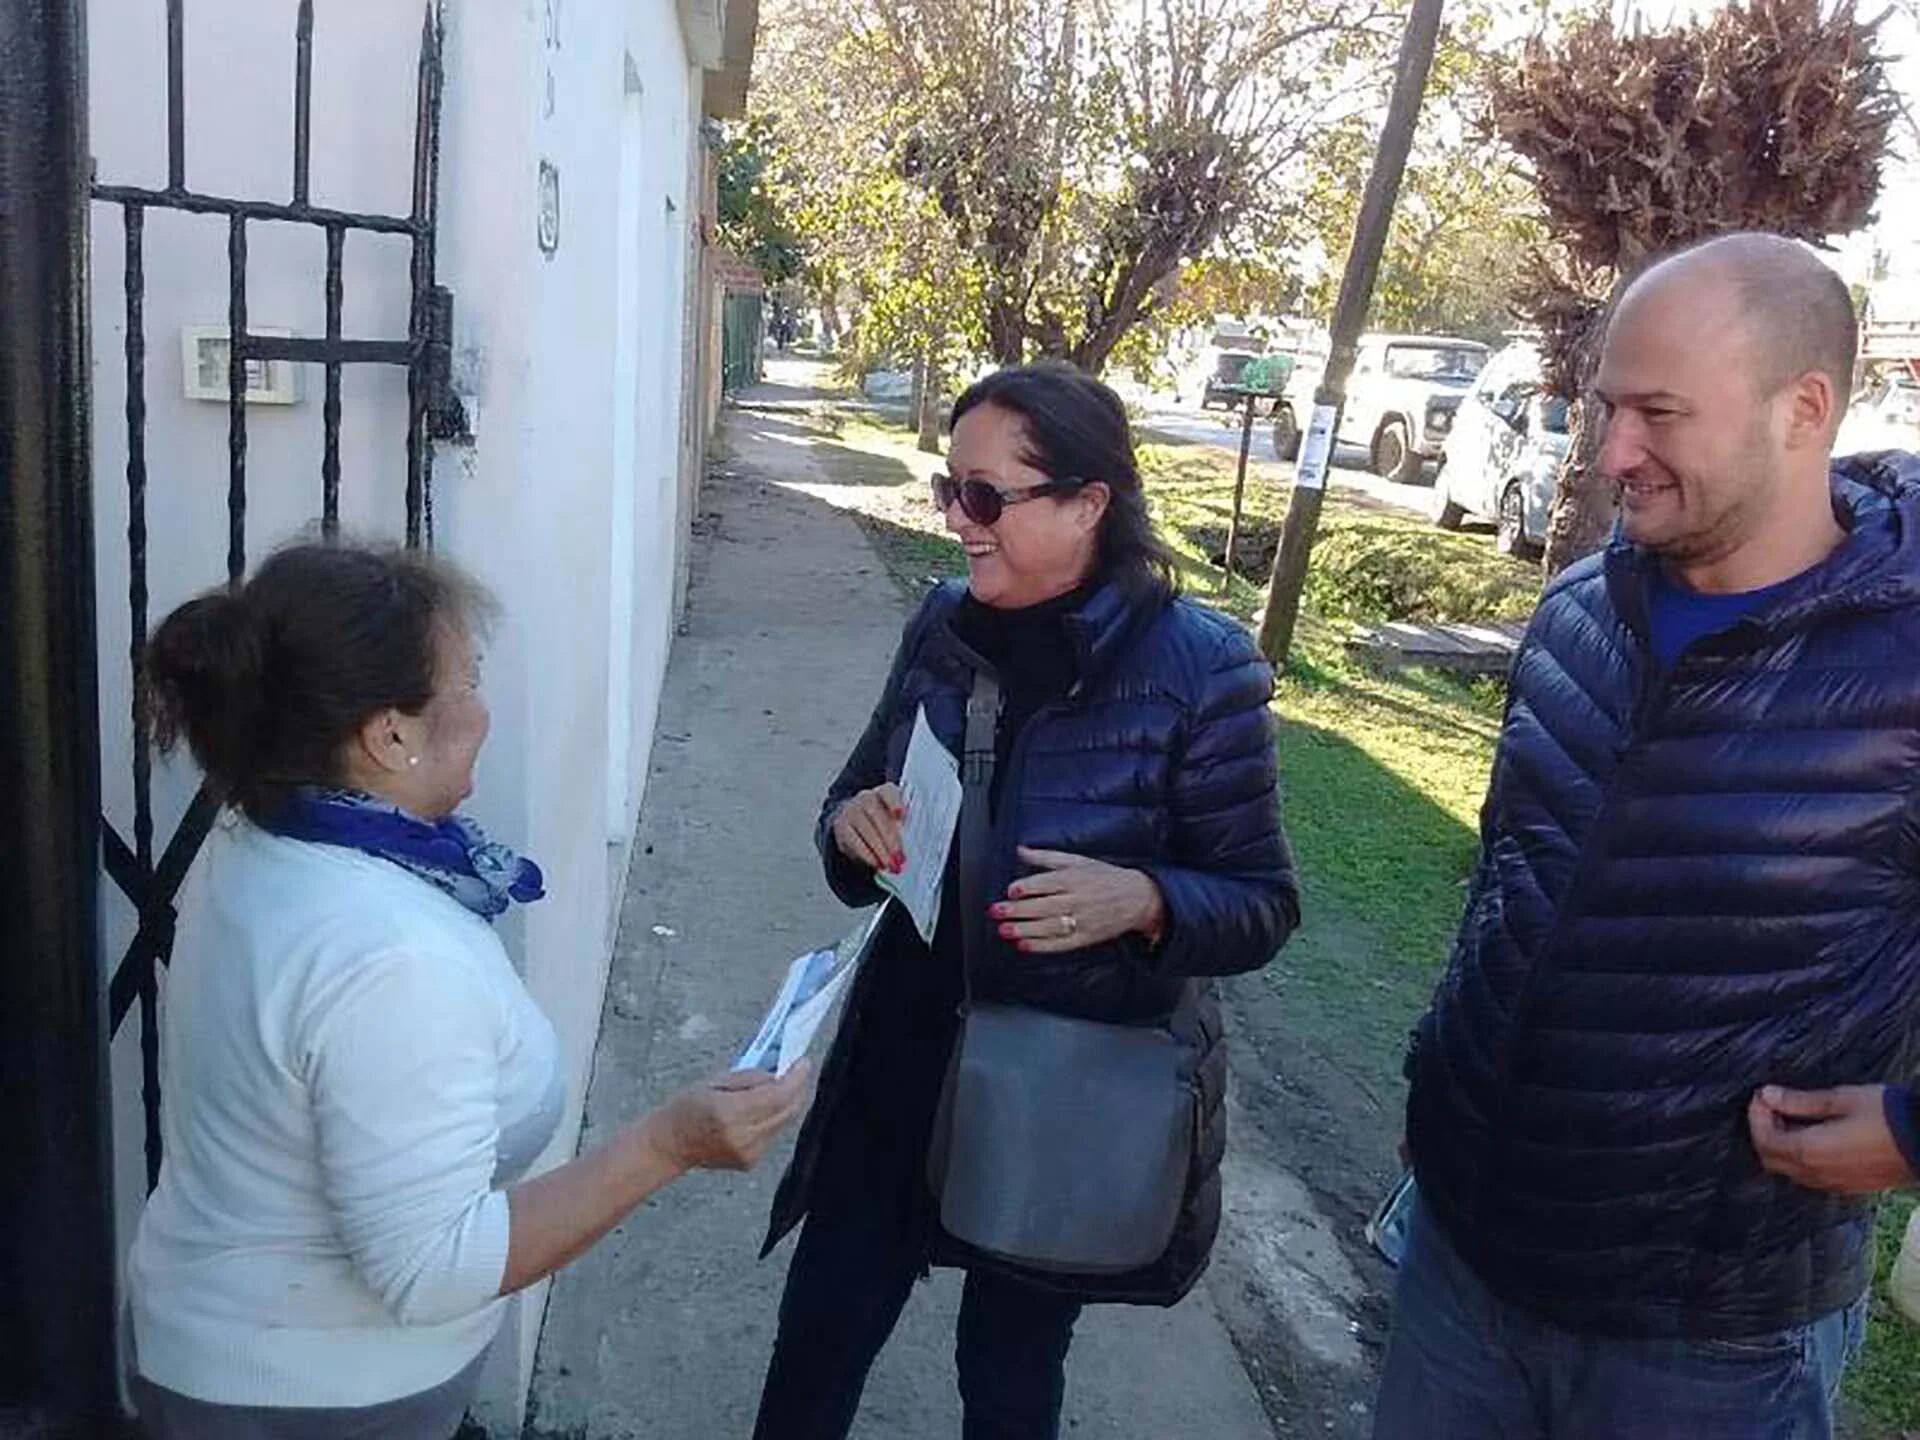 La senadora nacional Marta Varela participó hoy en el barrio El Arco de la localidad de Benavídez, en la provincia de Buenos Aires, del timbreo nacional de Cambiemos